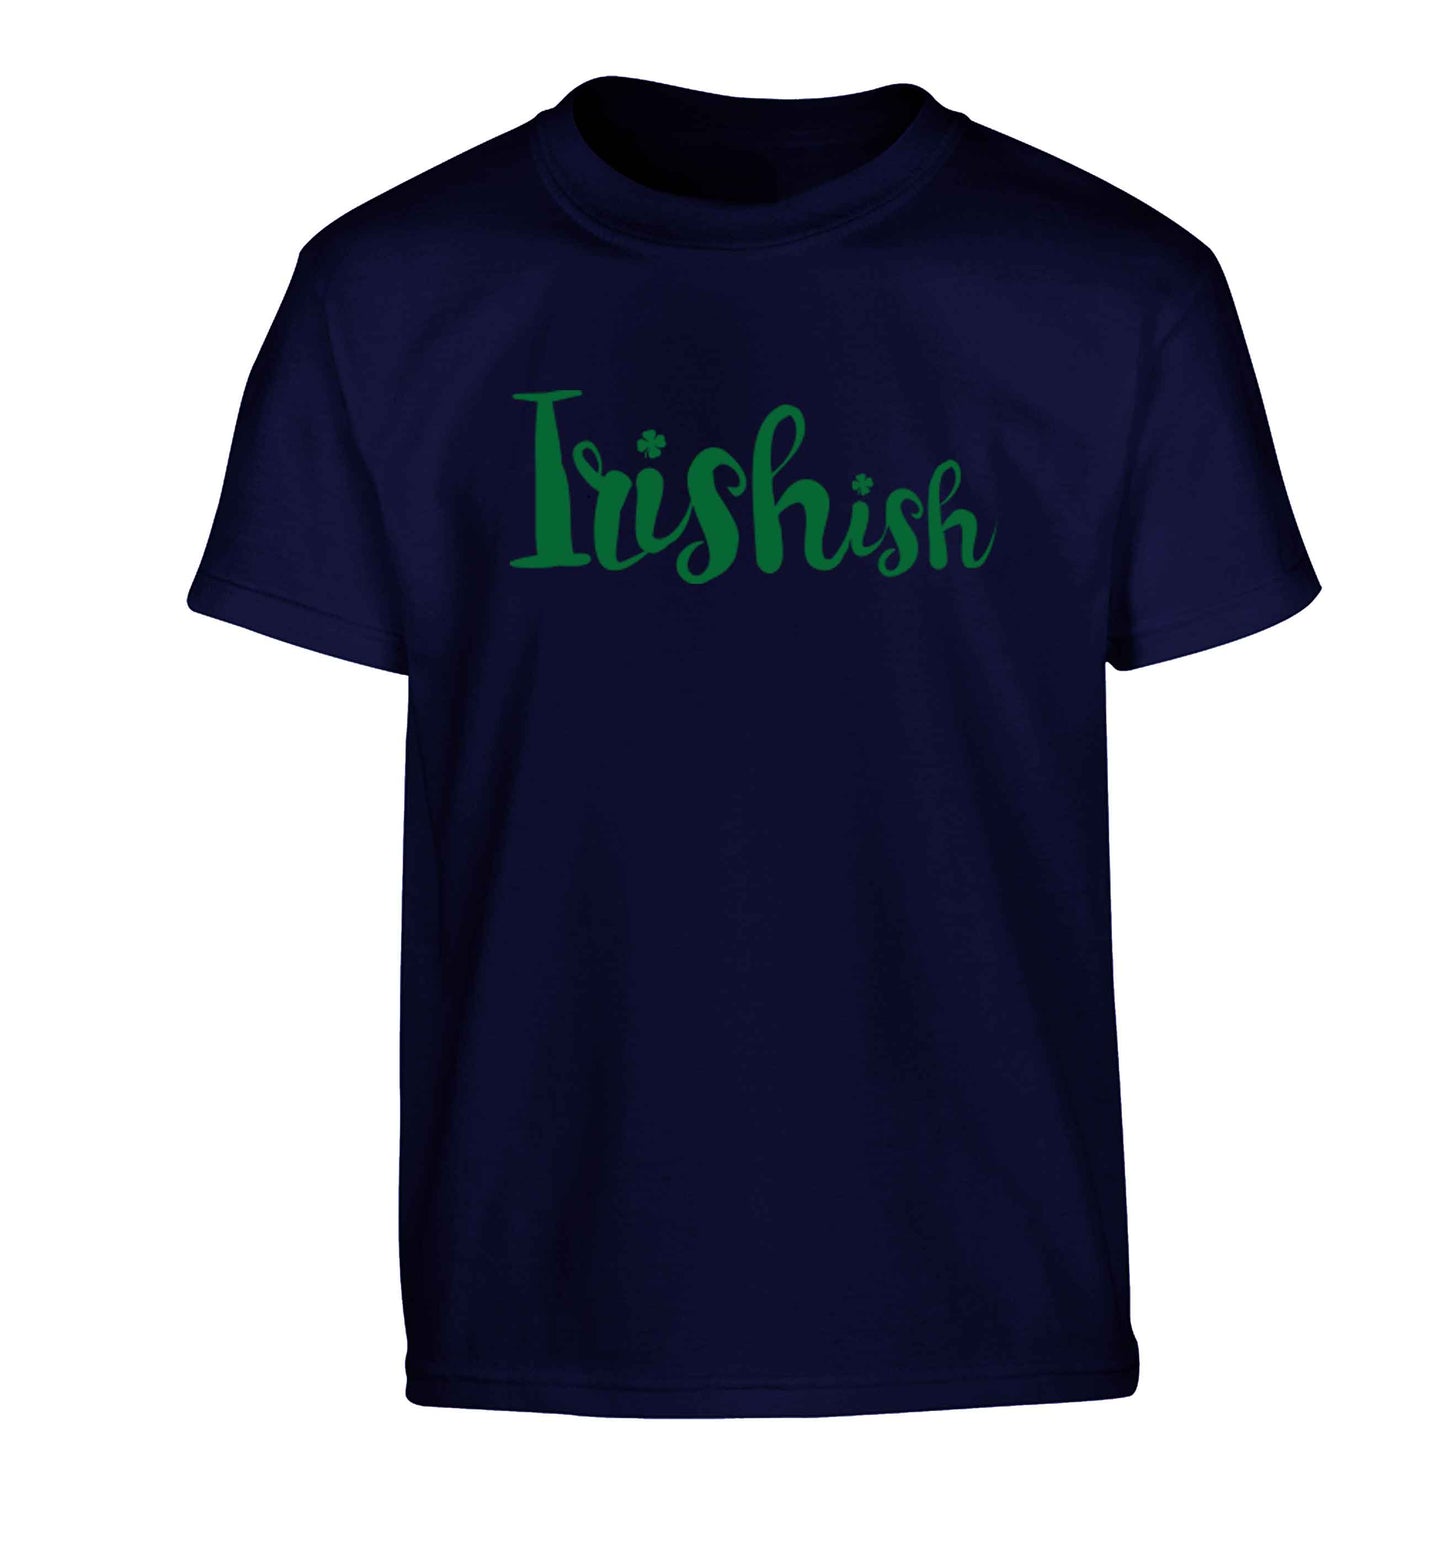 Irishish Children's navy Tshirt 12-13 Years